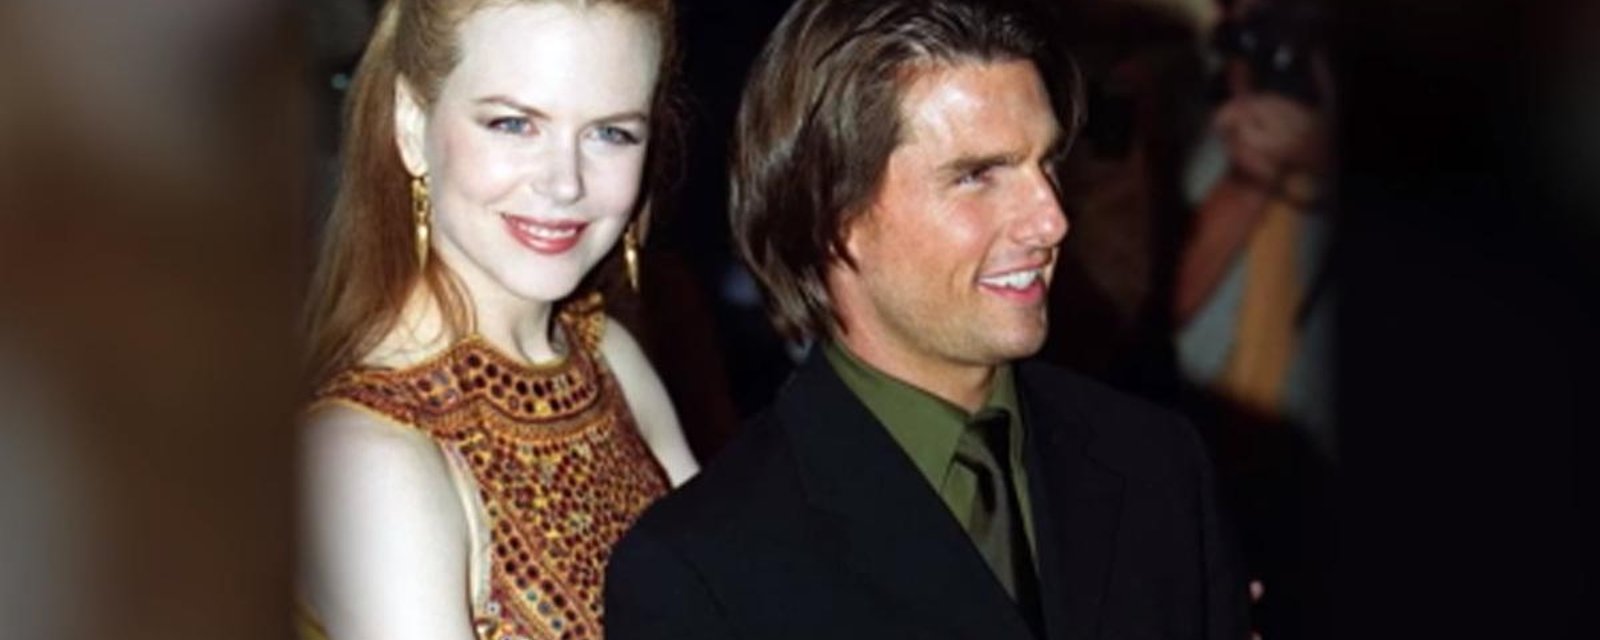 Nicole Kidman fait une révélation bouleversante à propos de son mariage avec Tom Cruise...